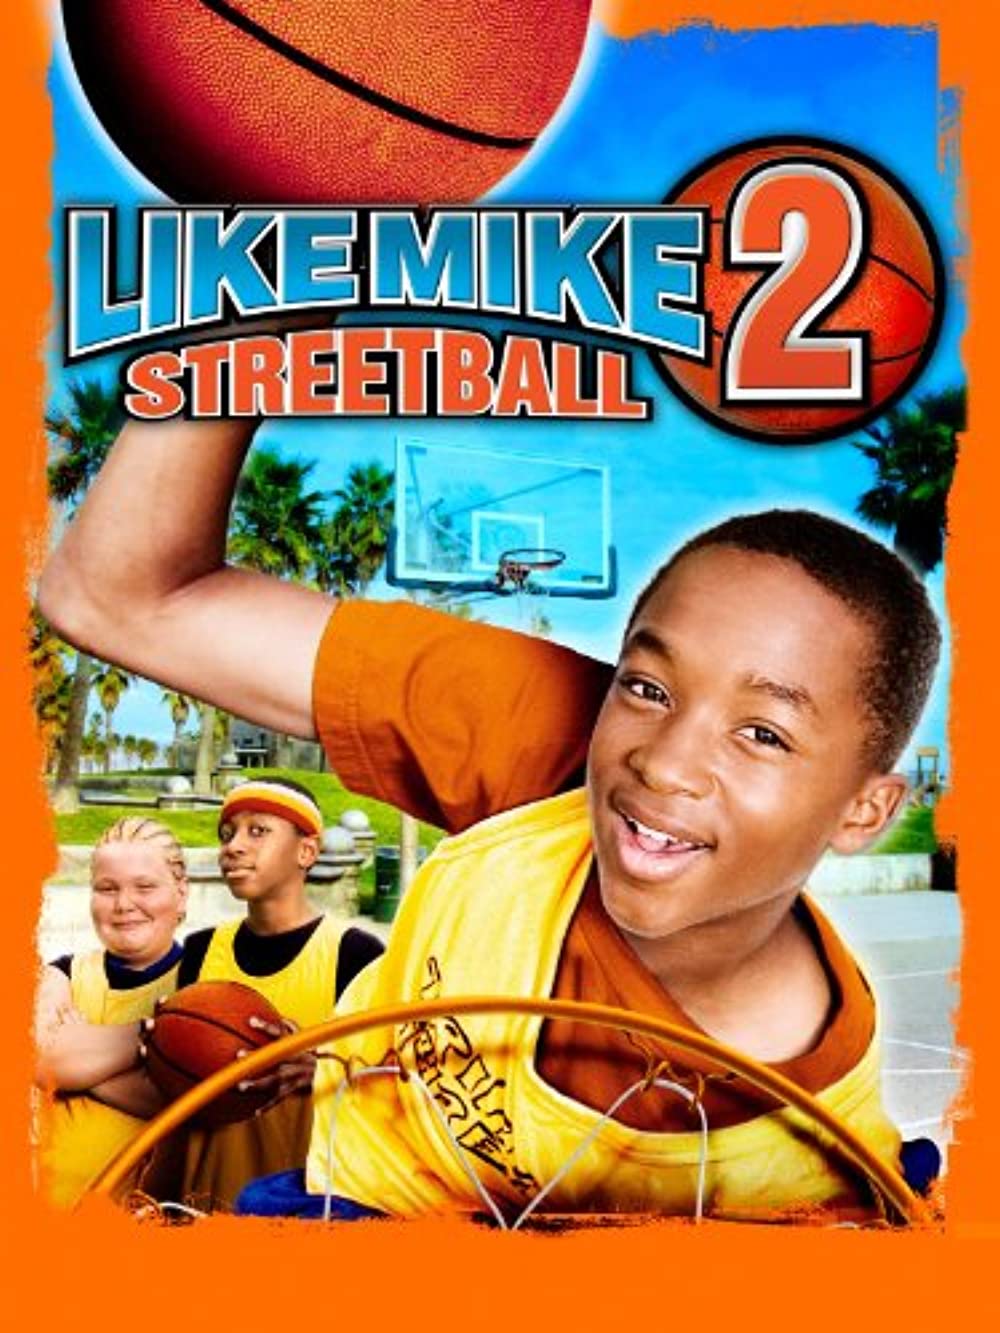 ดูหนังออนไลน์ฟรี Like Mike 2 Streetball (2006) เจ้าหนูพลังไมค์ 2 หนังเต็มเรื่อง หนังมาสเตอร์ ดูหนังHD ดูหนังออนไลน์ ดูหนังใหม่